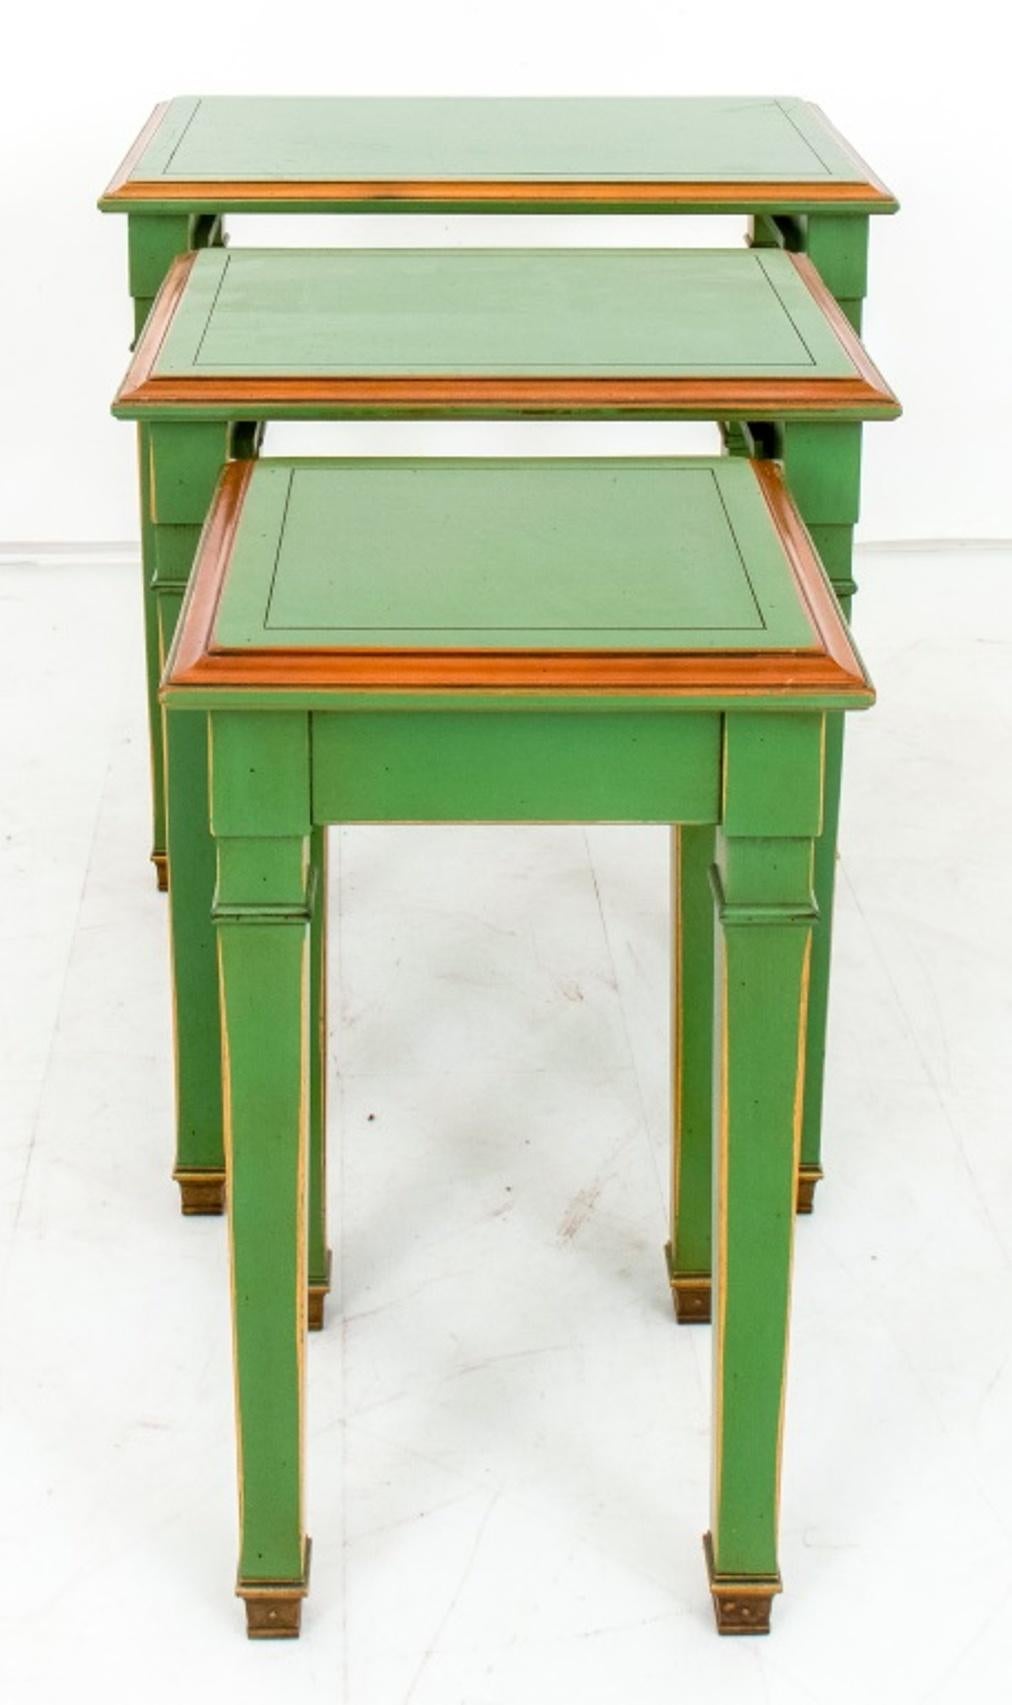 Tables gigognes de style néoclassique laqué vert jade et doré, trois (3), chacune avec un plateau rectangulaire mouluré au-dessus de quatre pieds fuselés à panneaux carrés.

Dimensions : 21